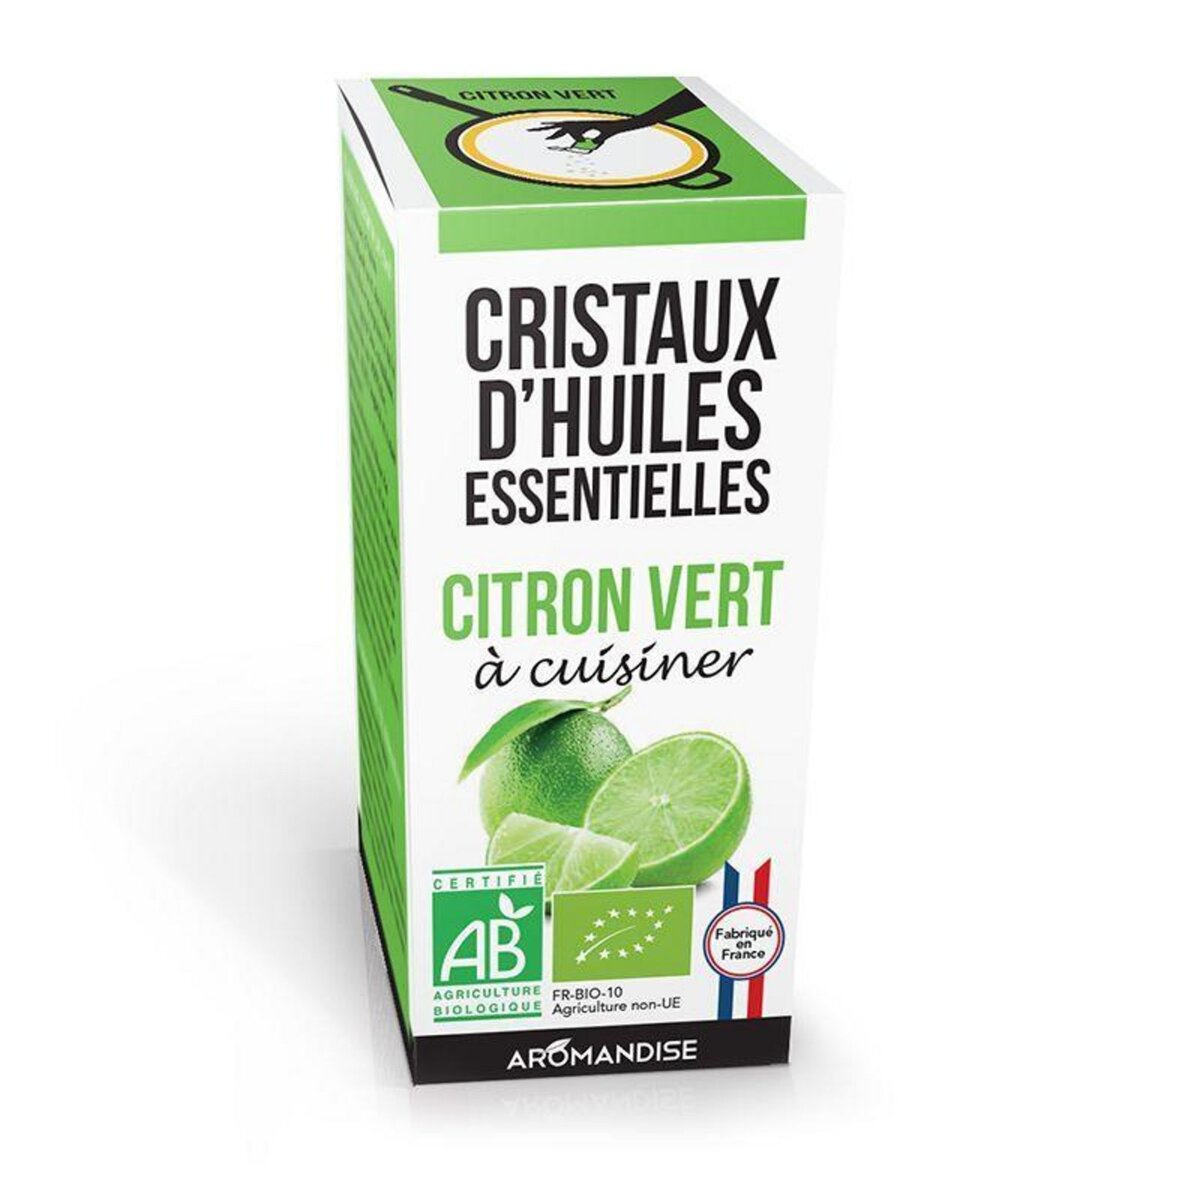 Aromandise Cristaux d'huiles essentielles - Citron vert 10 g